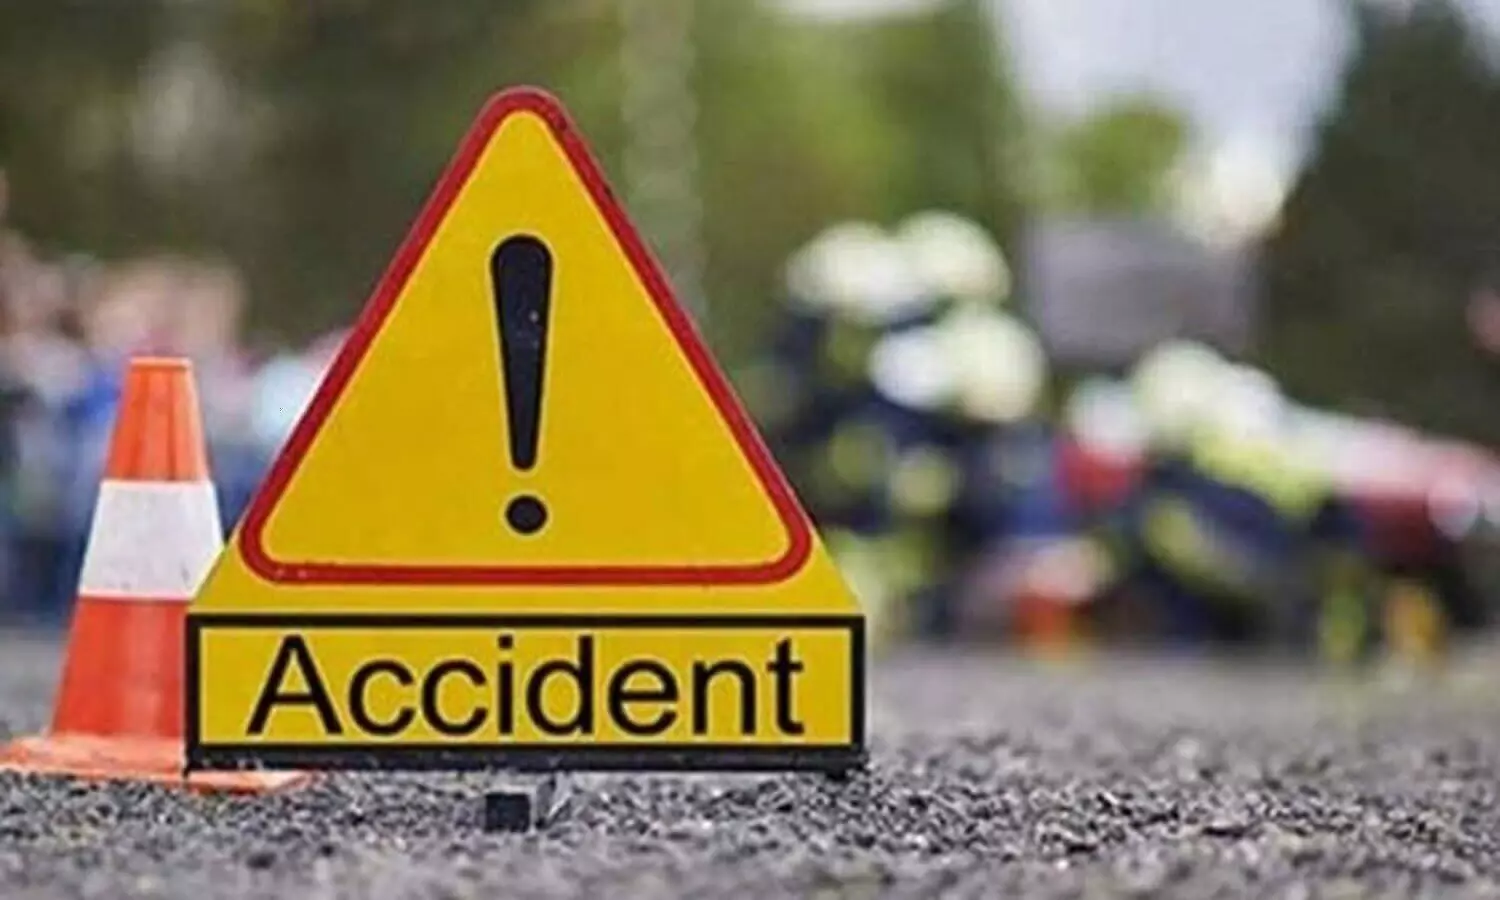 Bihar Car Accident : पूर्णिया में भीषण सड़क हादसा, 4 की मौत, 2 मरने वालों के सिर हुए धड़ से अलग